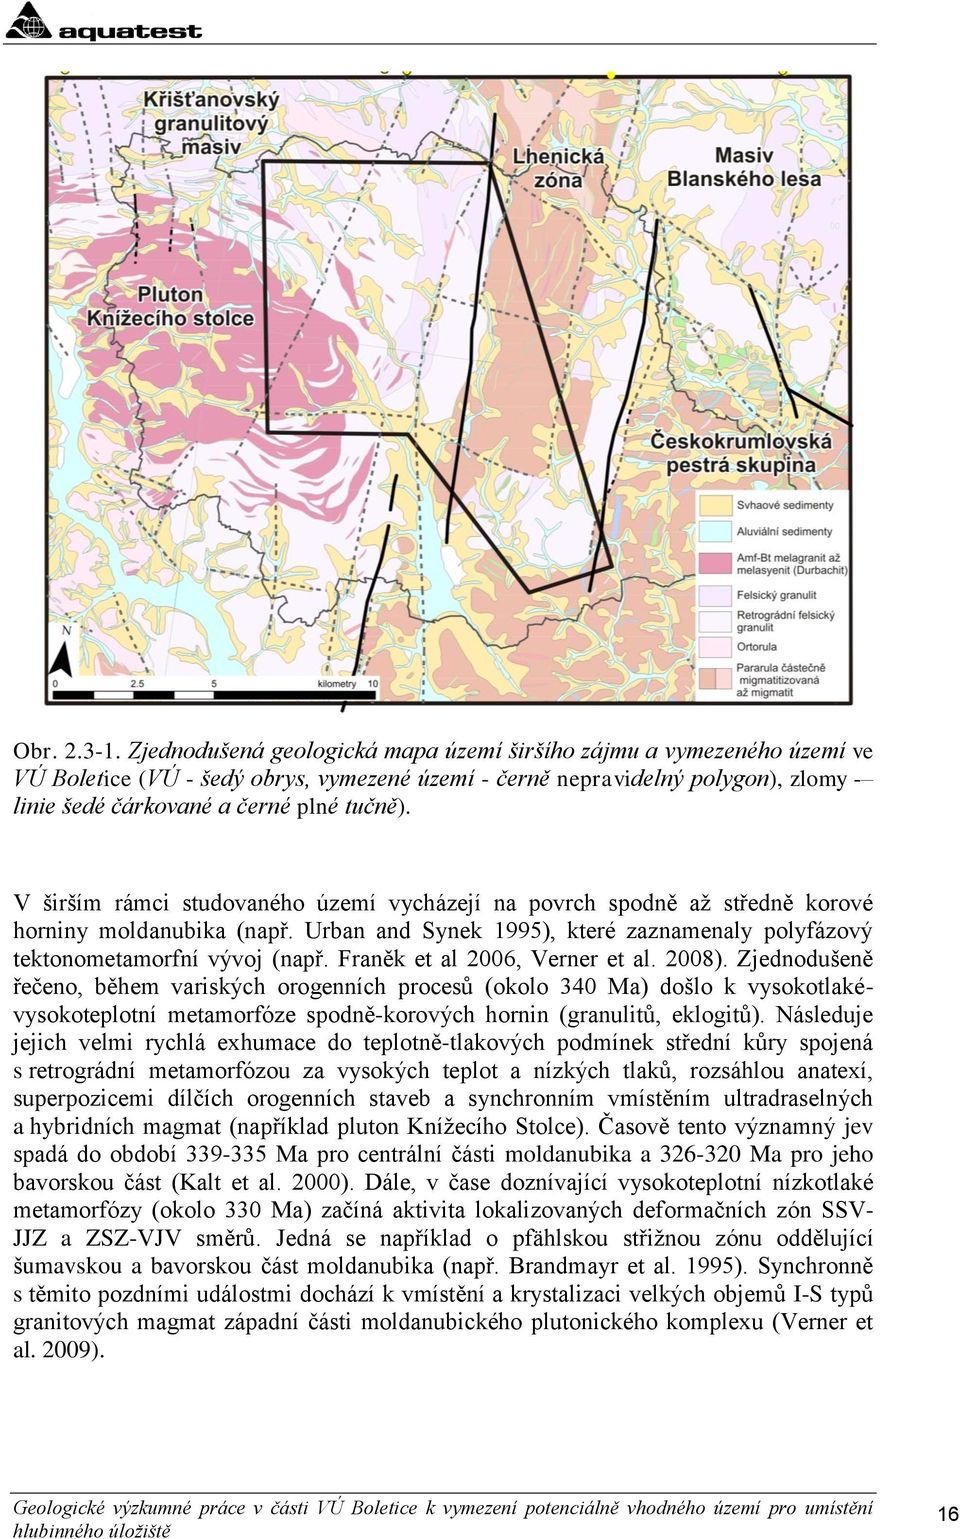 V širším rámci studovaného území vycházejí na povrch spodně aţ středně korové horniny moldanubika (např. Urban and Synek 1995), které zaznamenaly polyfázový tektonometamorfní vývoj (např.